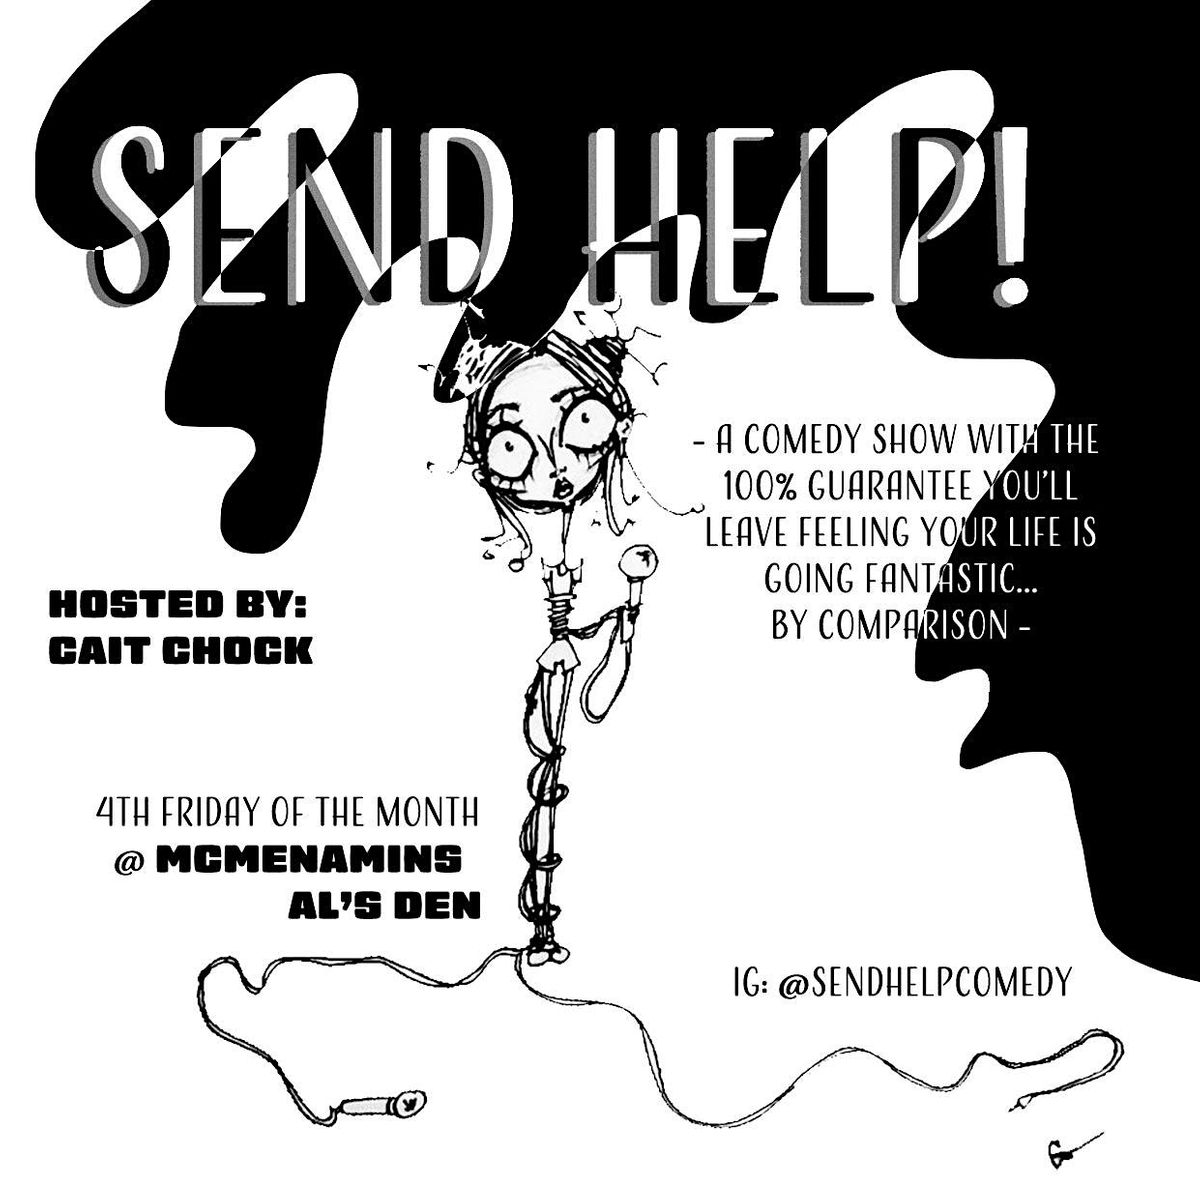 Send Help! Comedy Show